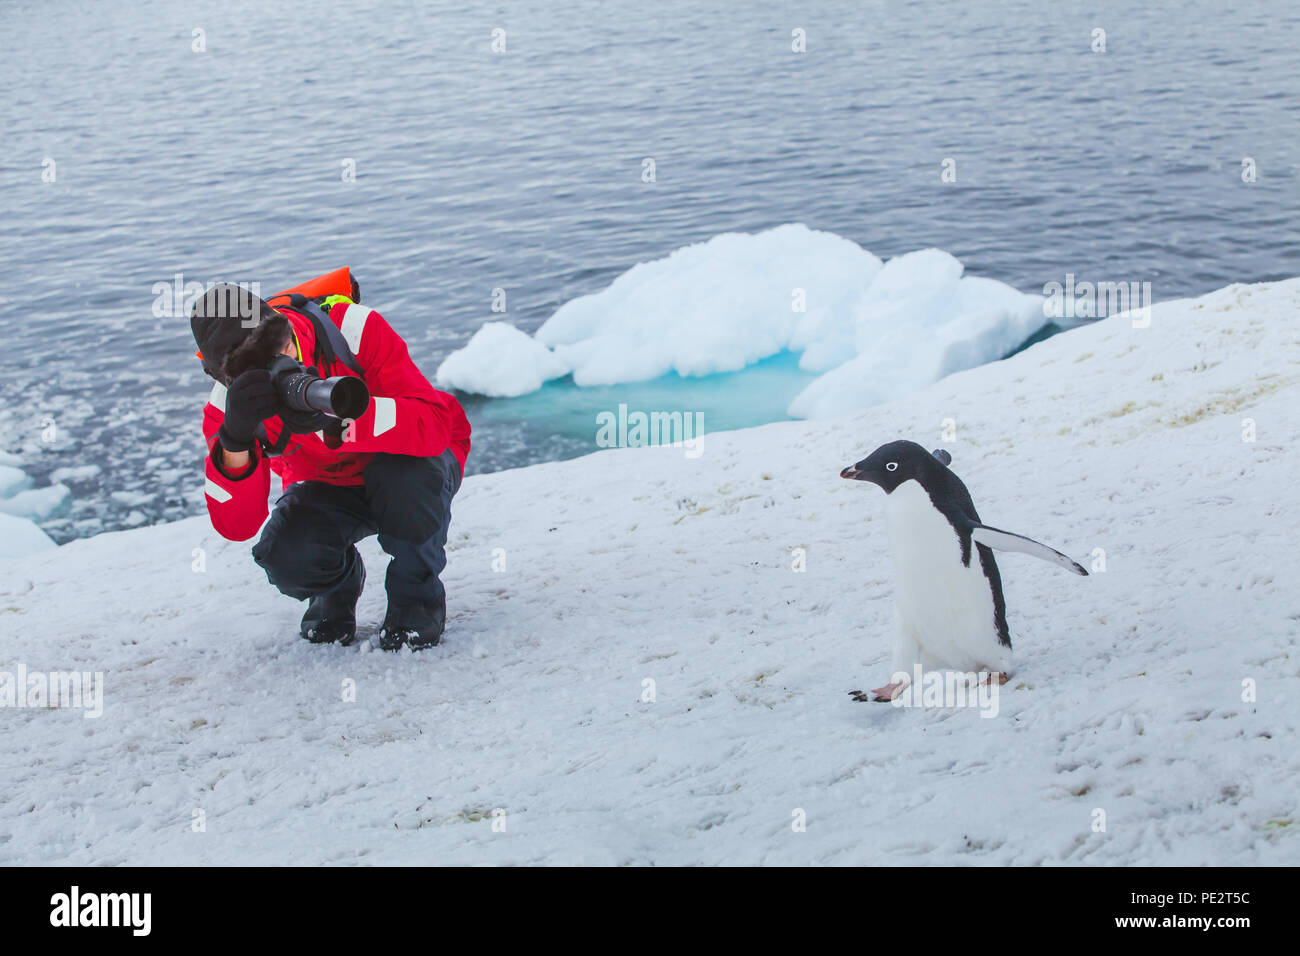 Photographe de la faune touristique taking photo d'oiseau adelie penguin dans l'Antarctique Banque D'Images